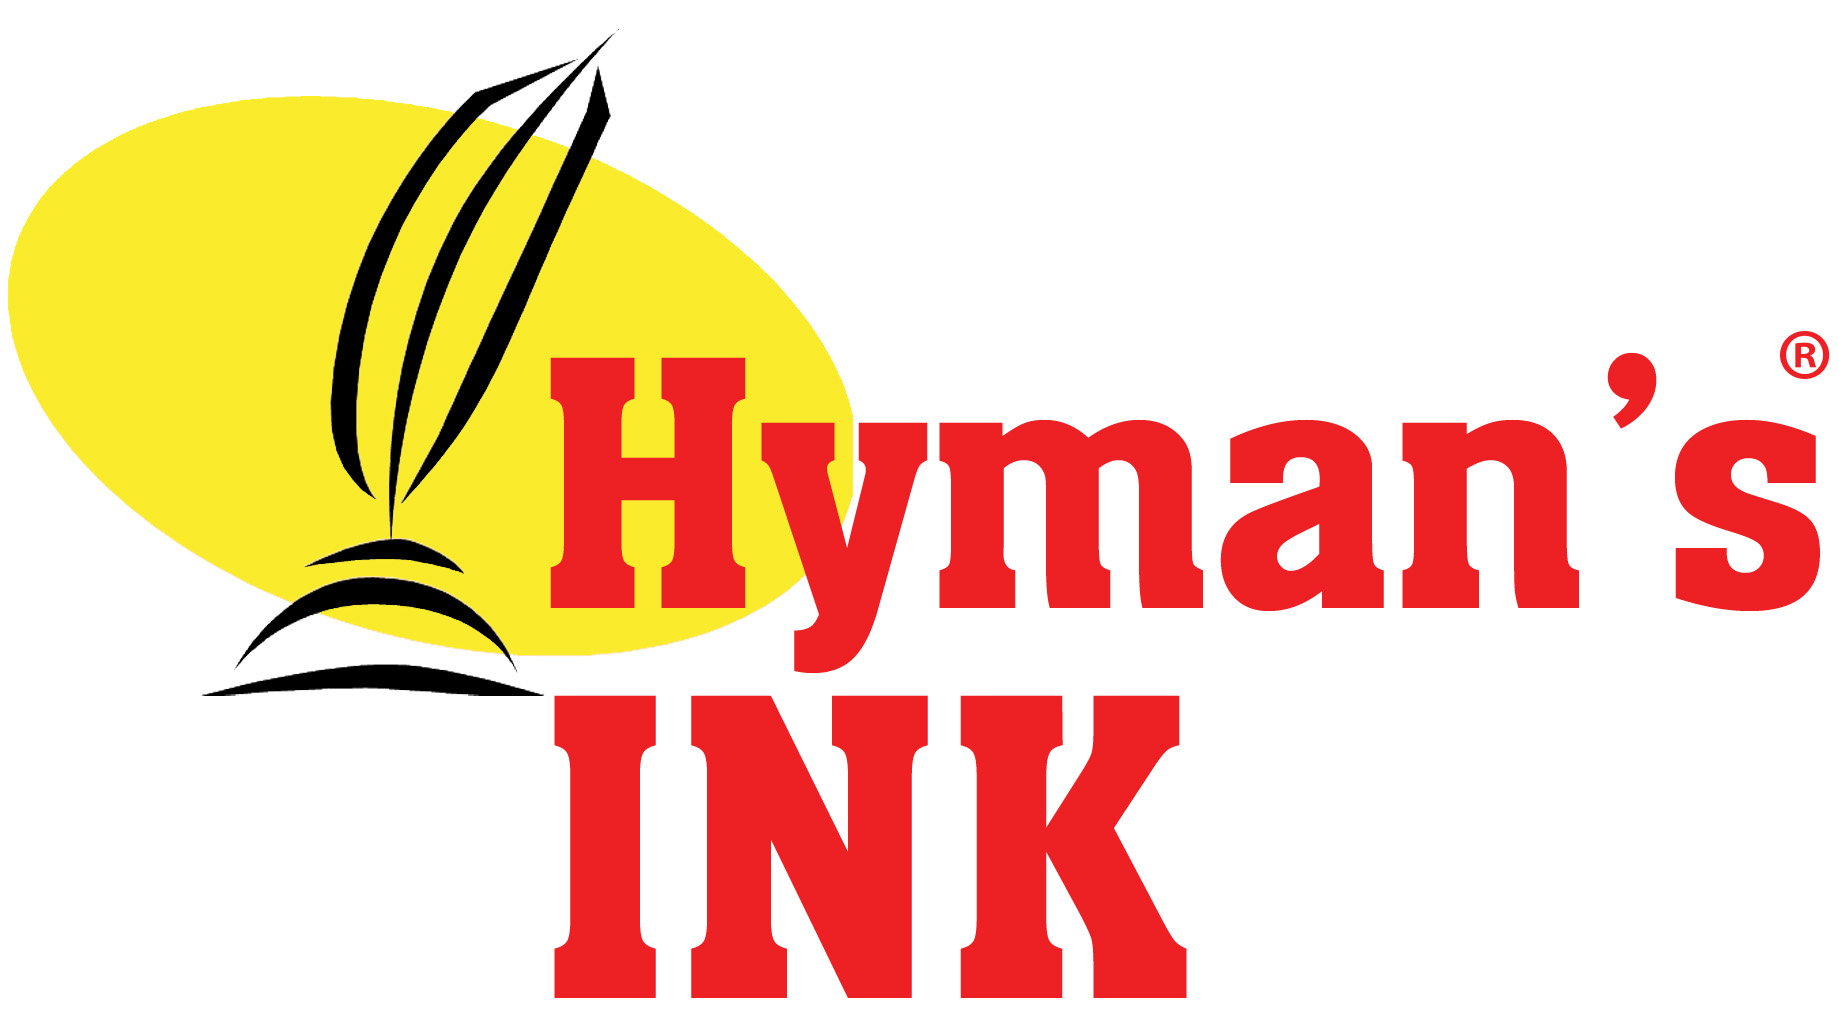 Hyman's Ink